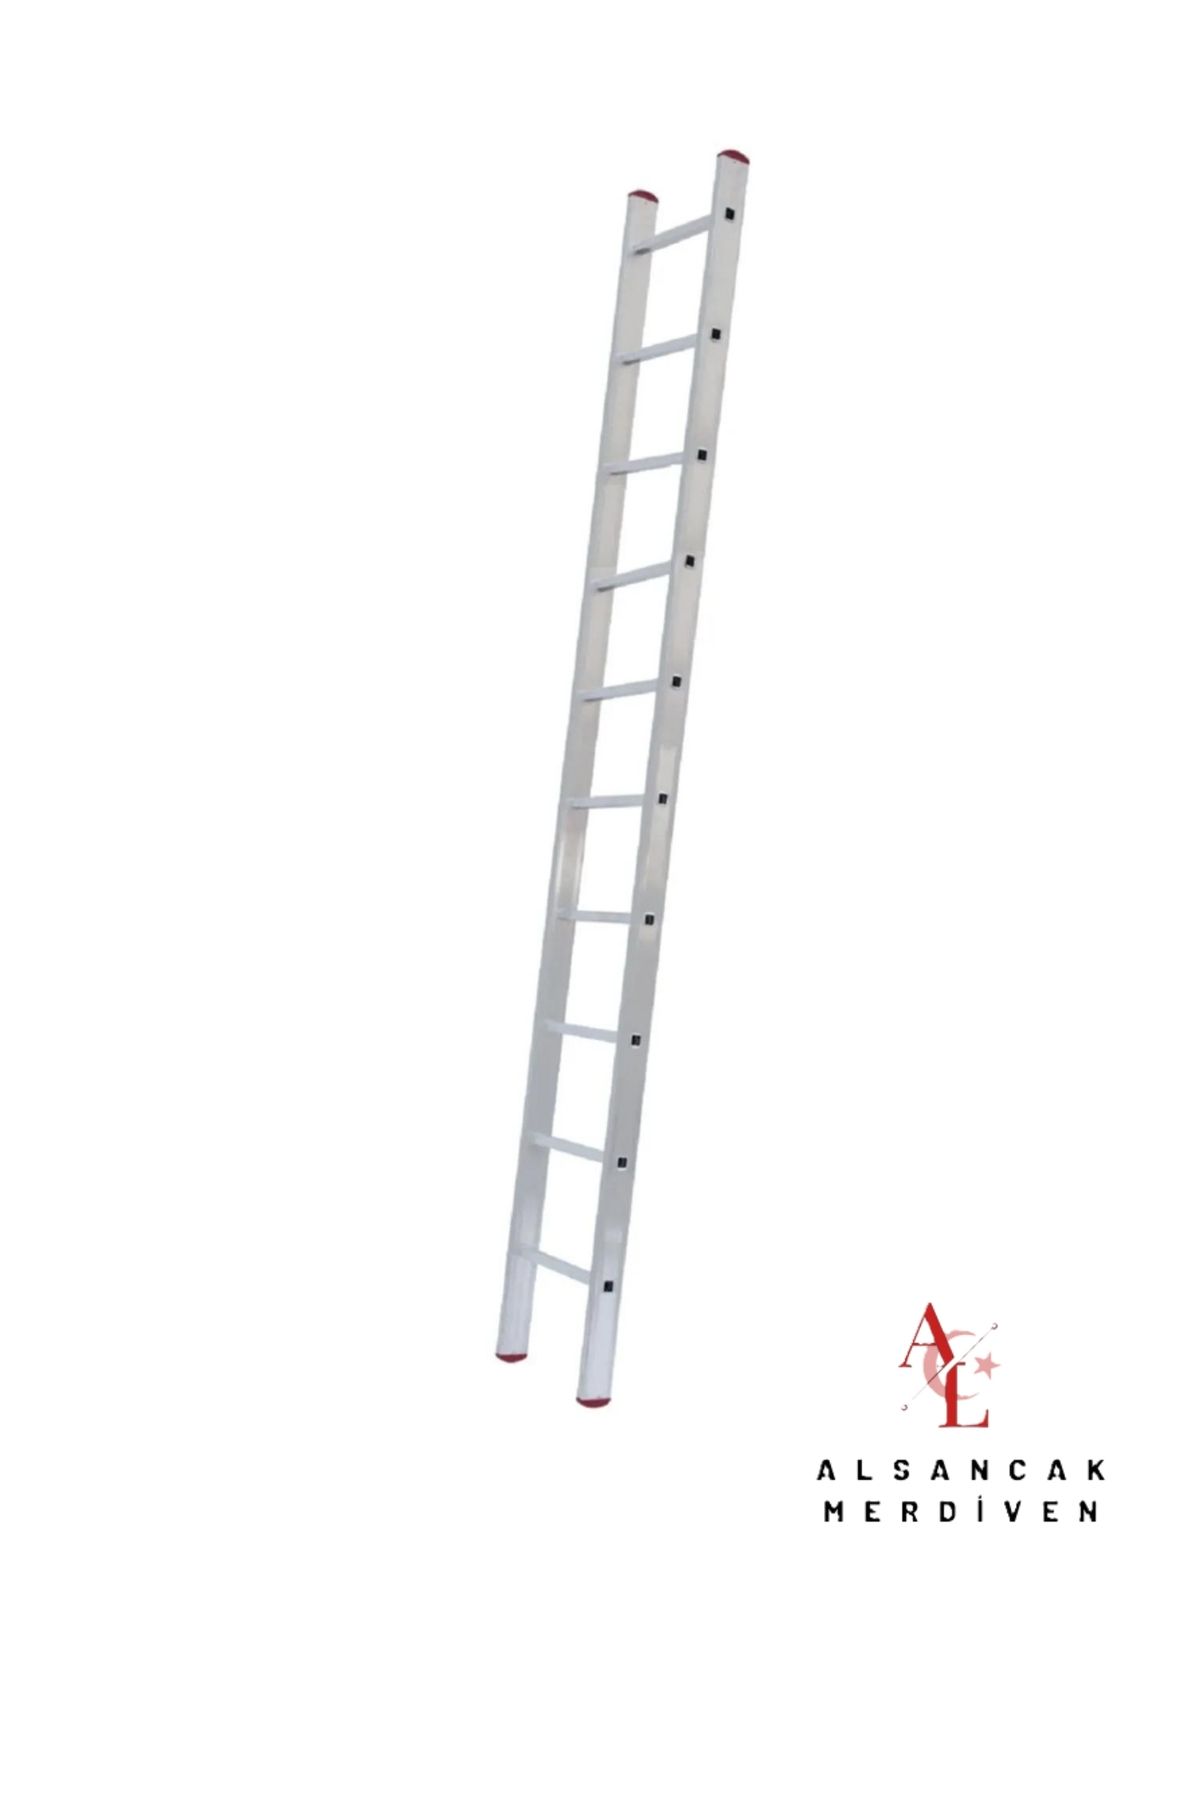 ALSANCAK MADENİ EŞYA 3 Metre Tek Parça Endüstriyel Alüminyum Merdiven ALS-3 Alsancak Merdiven